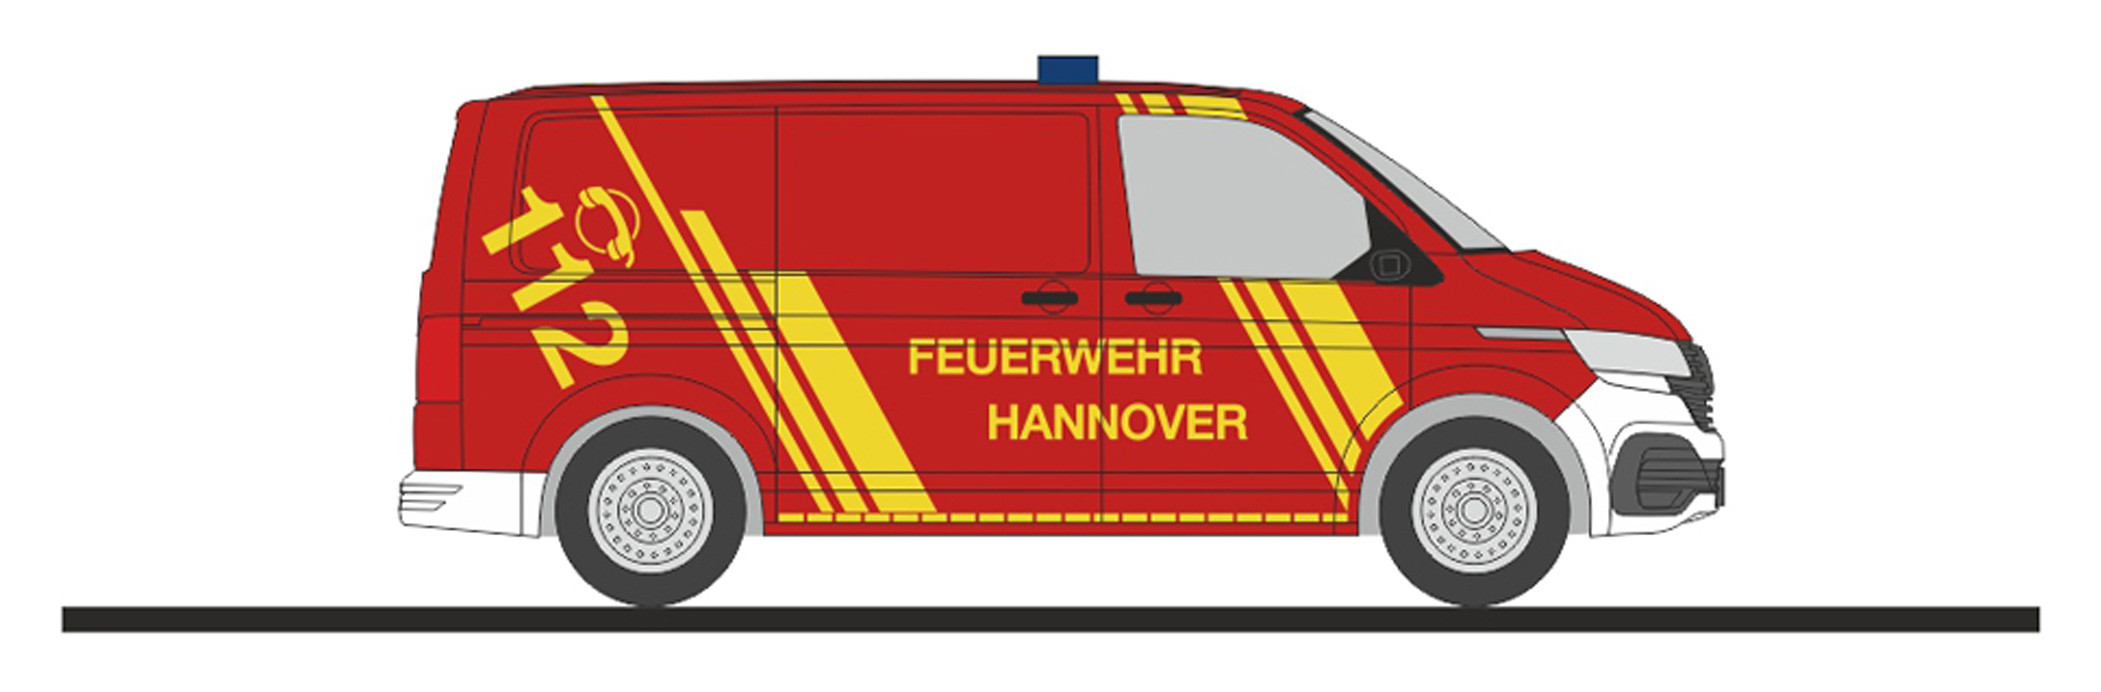 Rietze VW T6.1 KR "Feuerwehr Hannover", NH 03-04 / 23